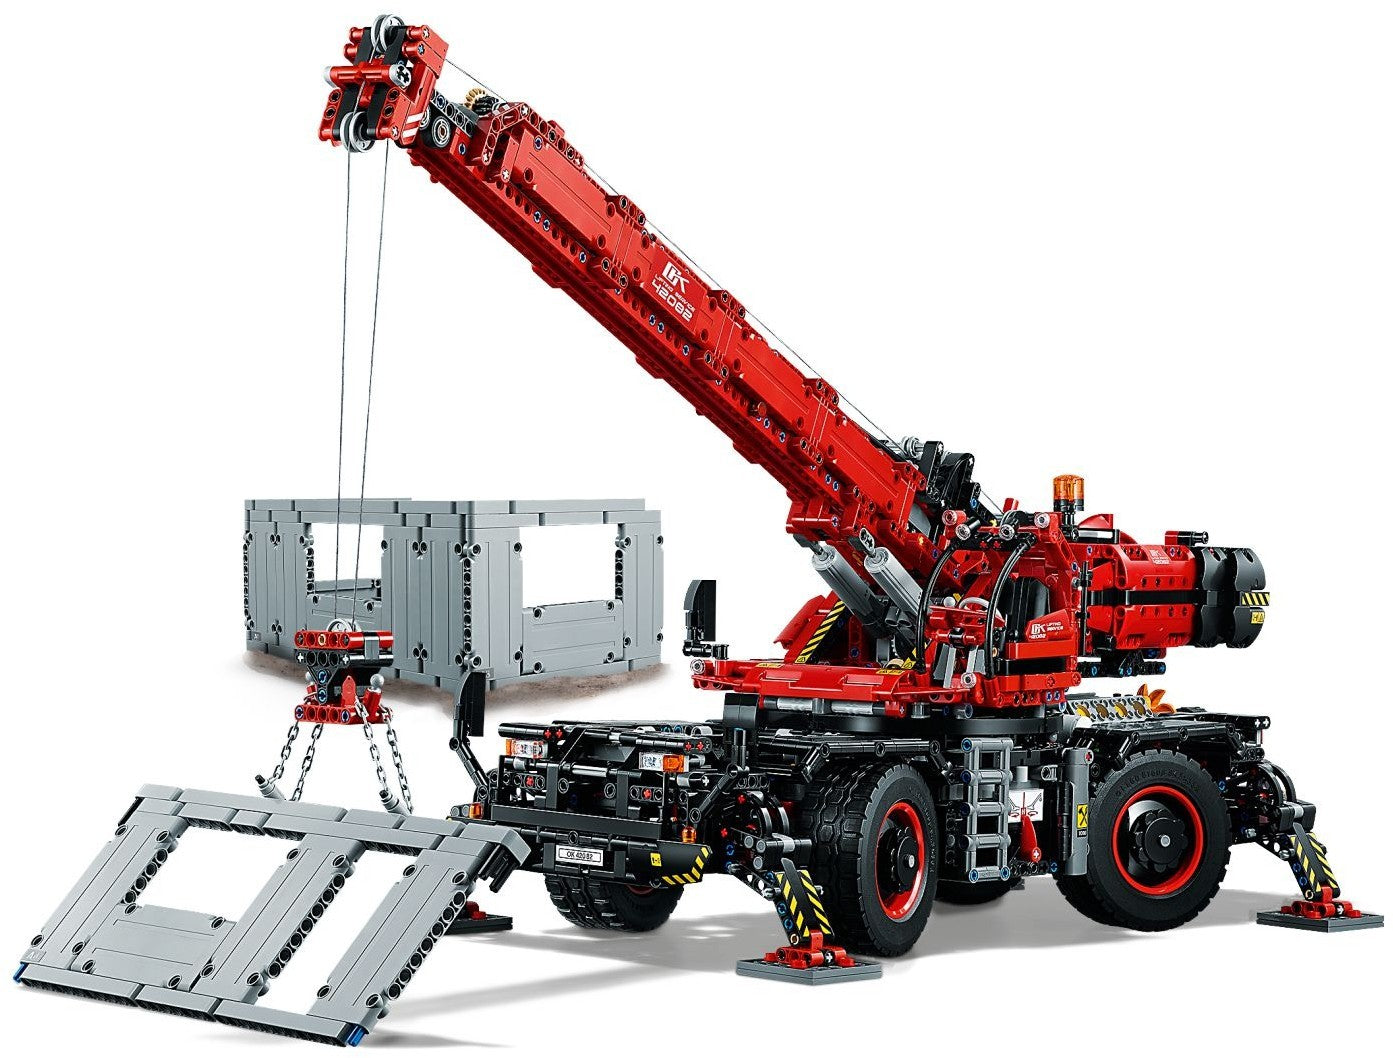 kloon Uitputting Cater Lego Technic Kraan voor alle terreinen - 42082 : Brickset for You